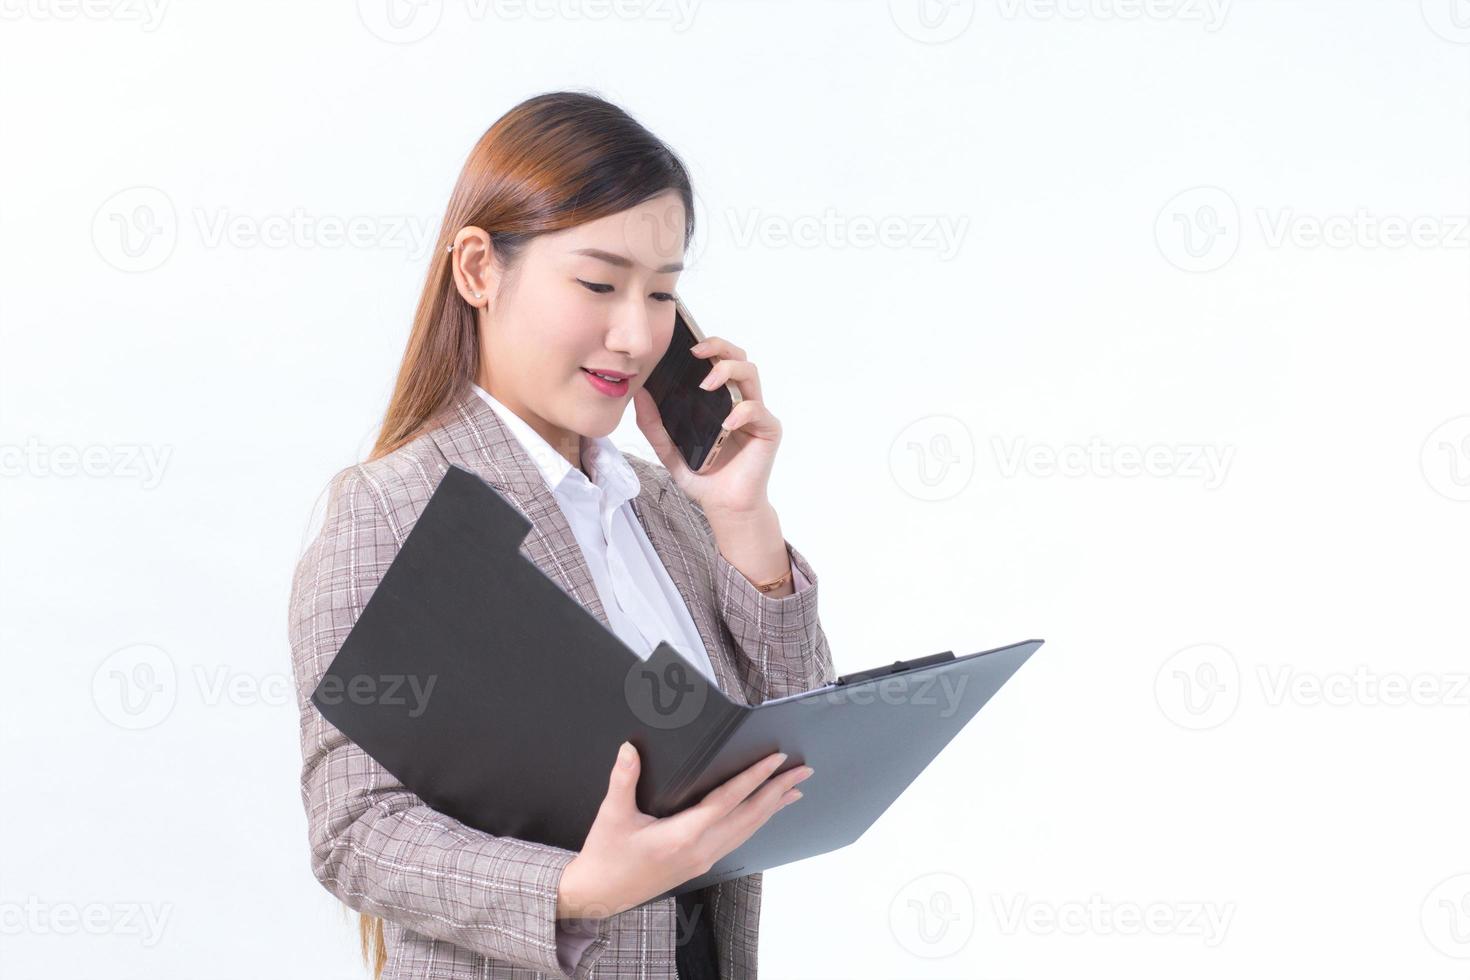 Asiatisk arbetande kvinna i formell kostym med vit skjorta ringer telefon och öppnar dokumentfil eller urklipp för att kontrollera data. foto